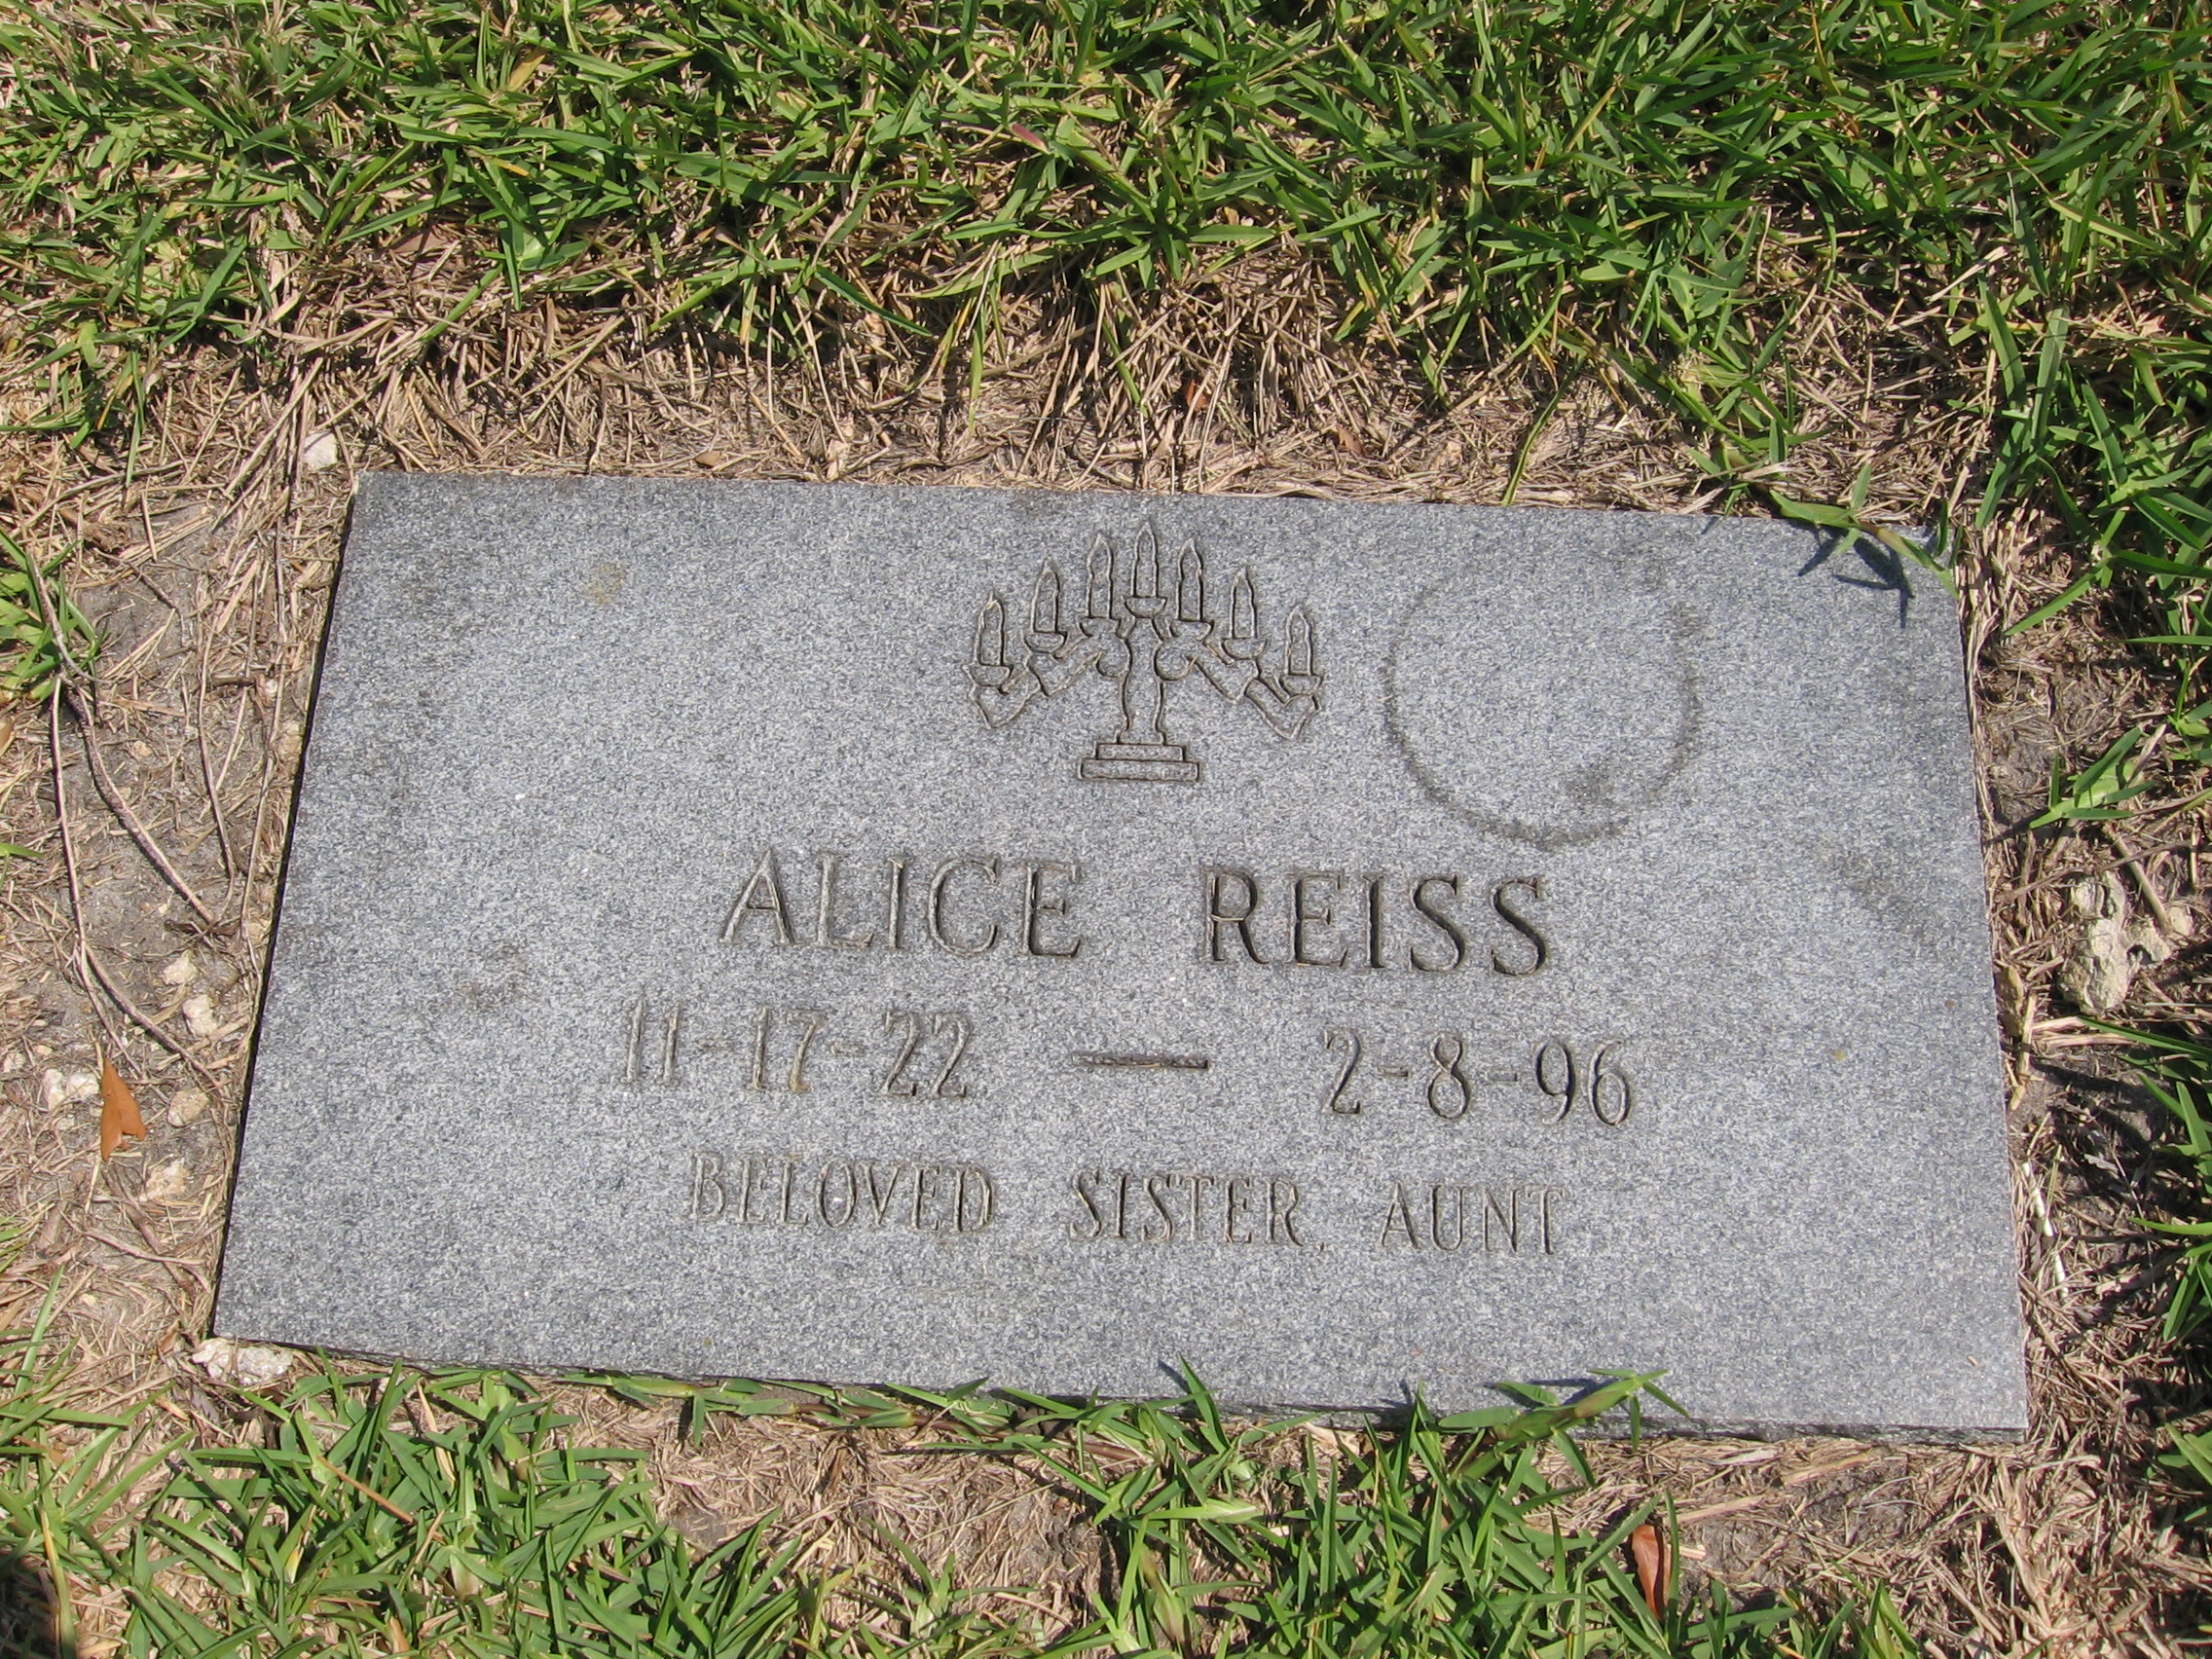 Alice Reiss